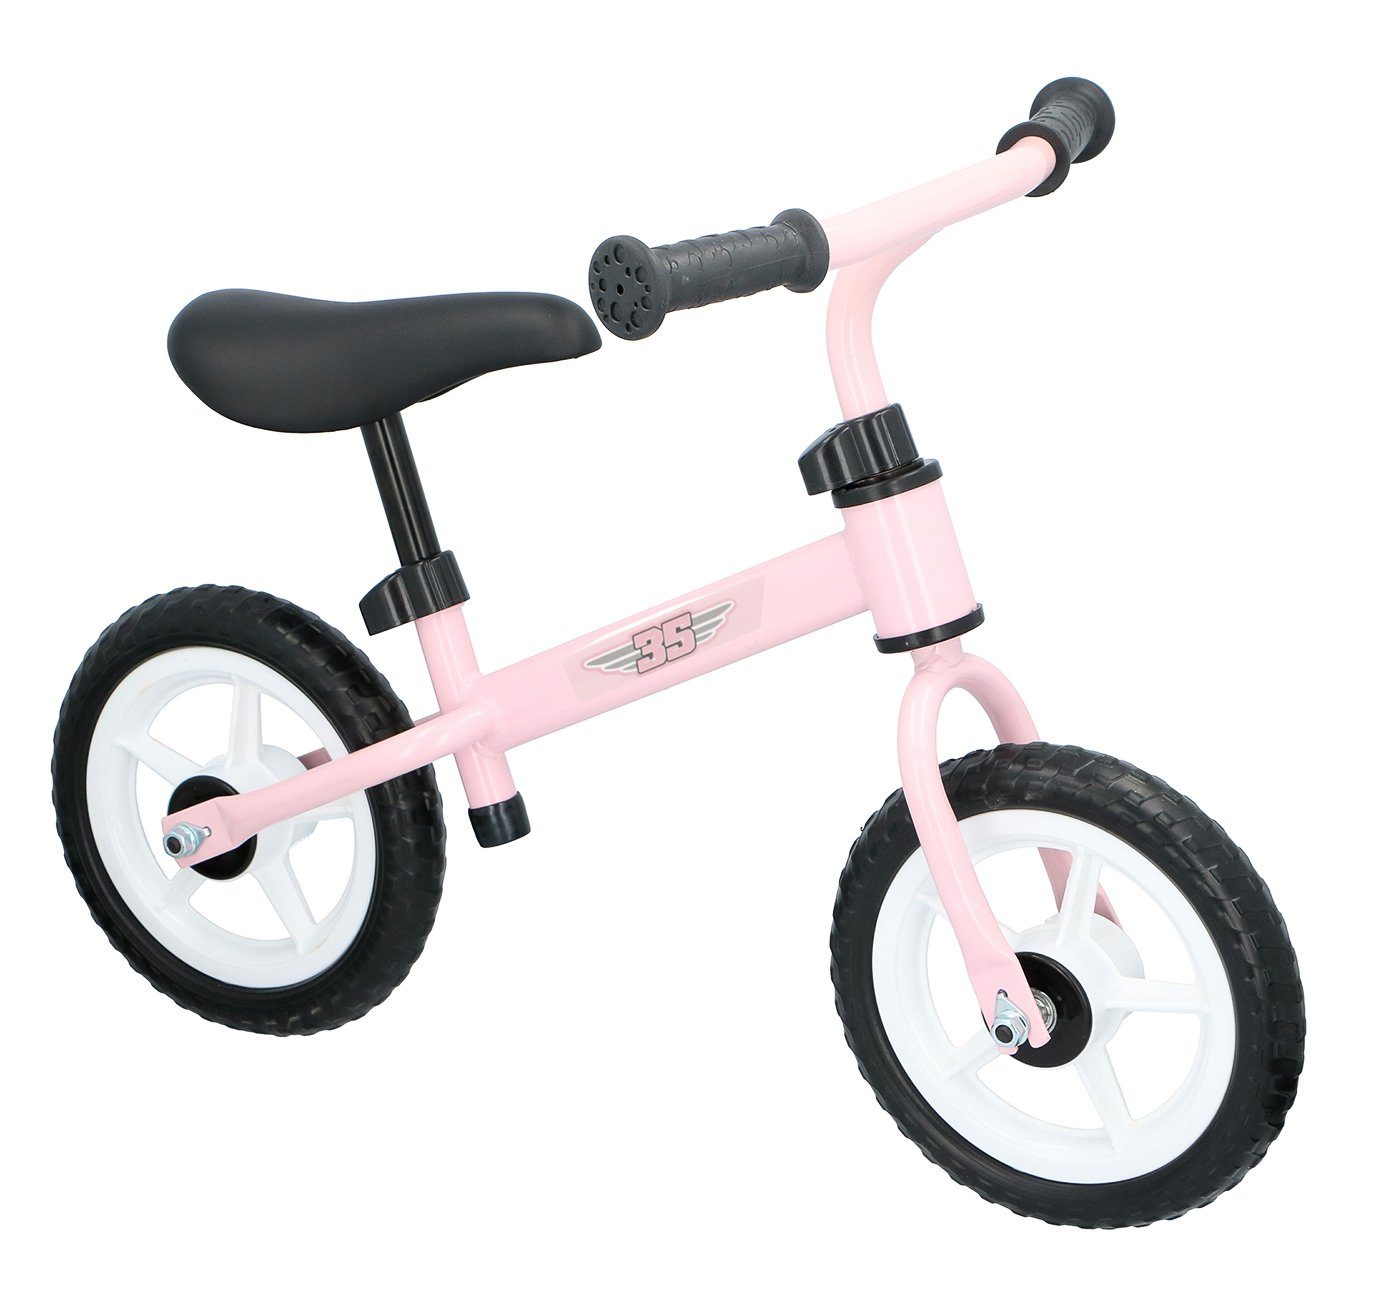 Profi 2in1 Kinder Lernlaufrad Dreirad Baby Walker Lauflernwagen ab 1-3 Jahre DE 